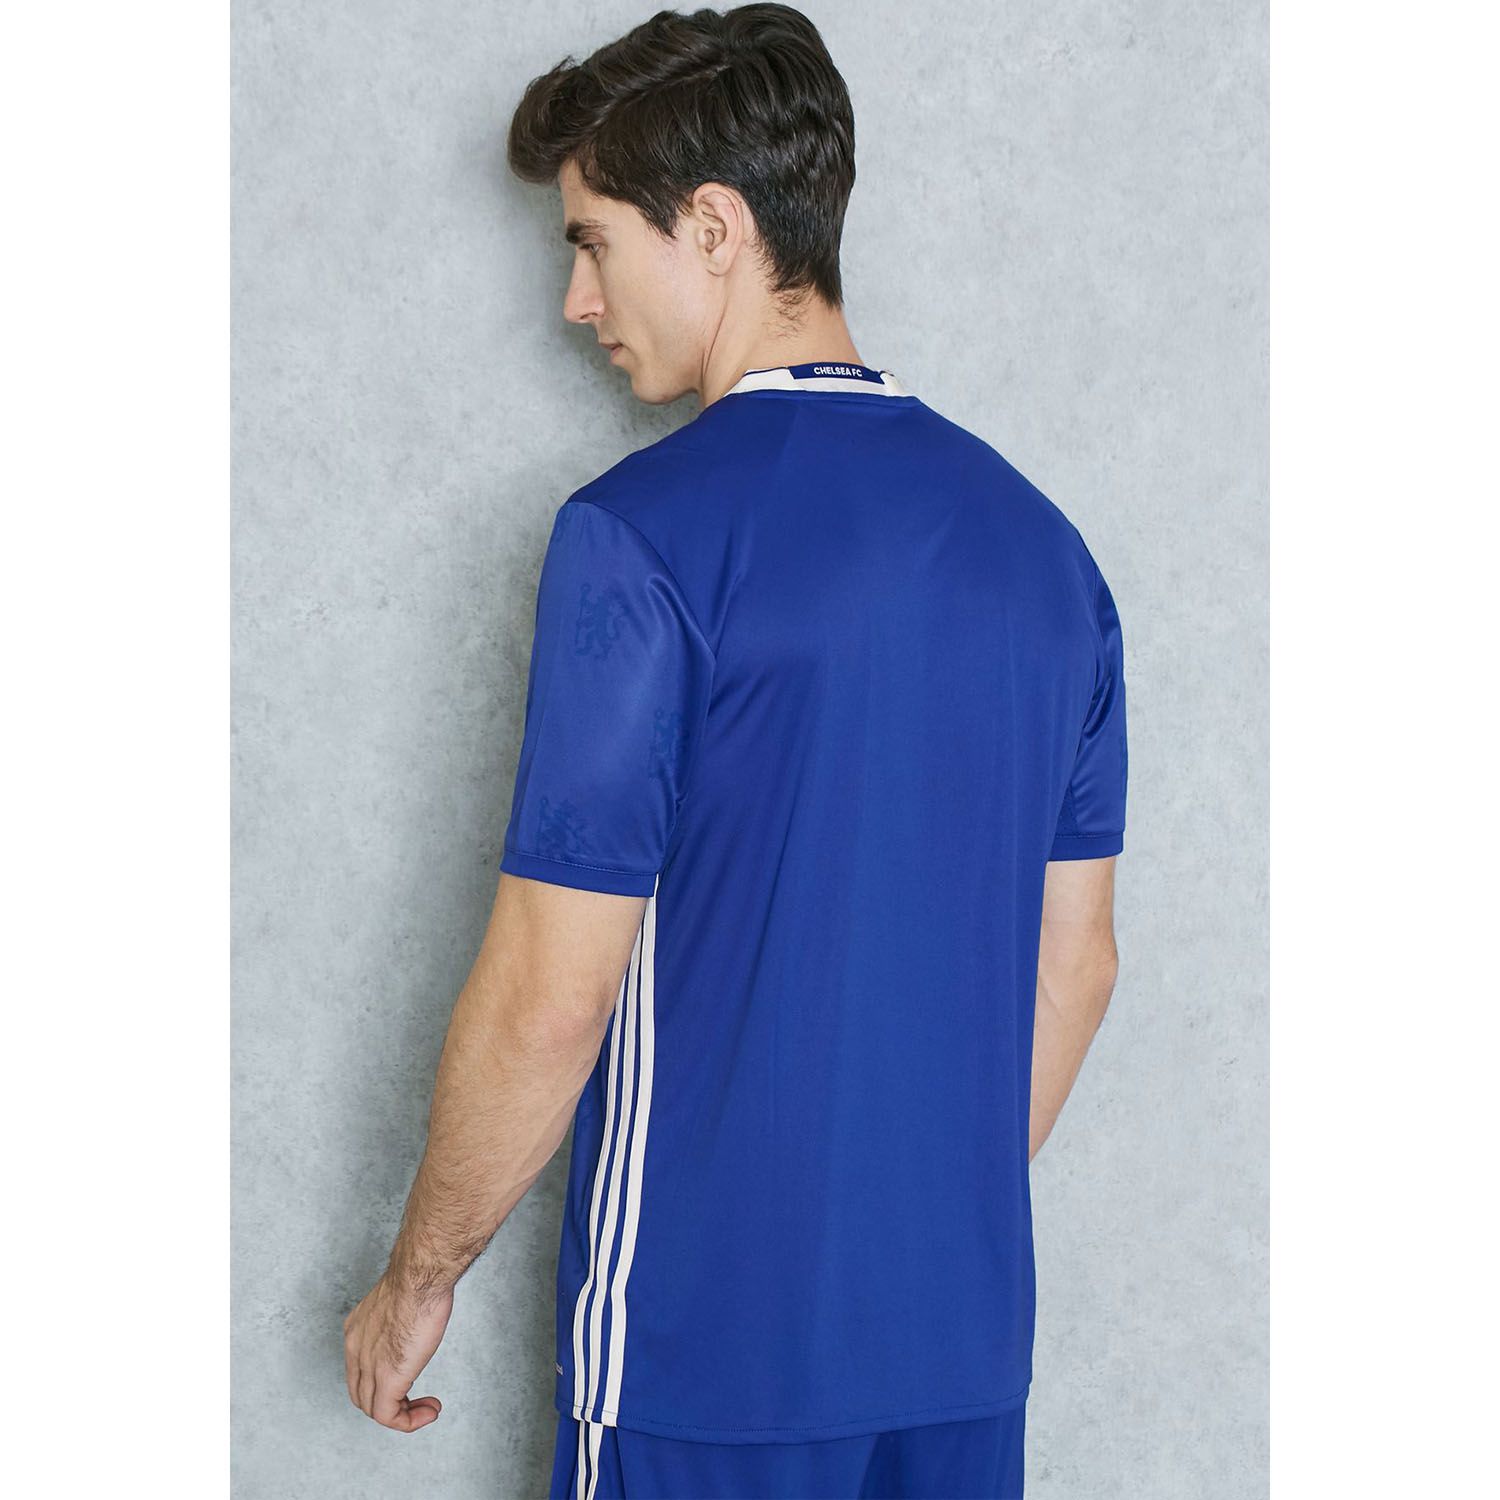 تی شرت ورزشی آستین کوتاه مردانه Chelsea FC Home Replica - آدیداس - آبي - 5